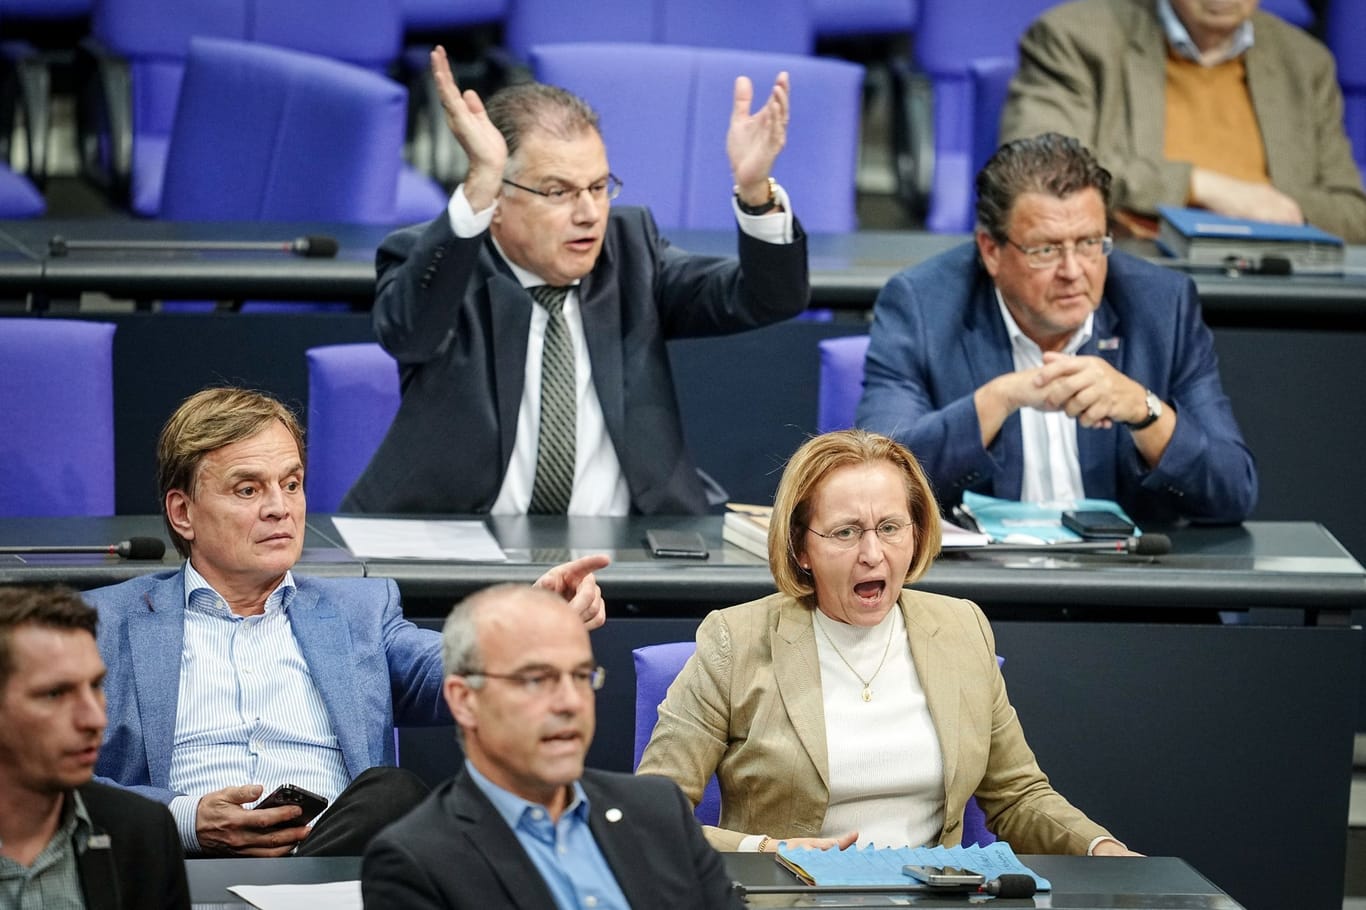 AfD-Fraktion im Bundestag: Sie kassiert so viele Ordnungsrufe wie keine andere Partei.